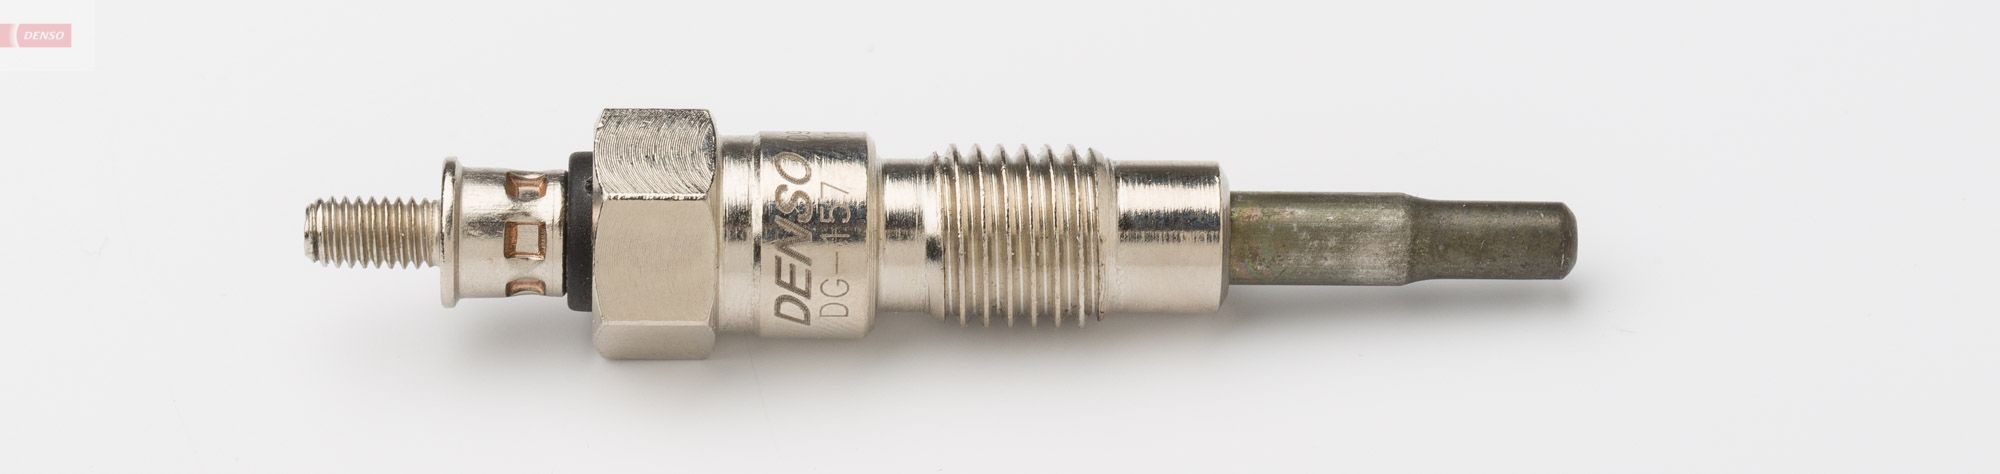 DG-157 DENSO Glow plug NISSAN 11V M10x1.25, 68 mm, 10 Nm